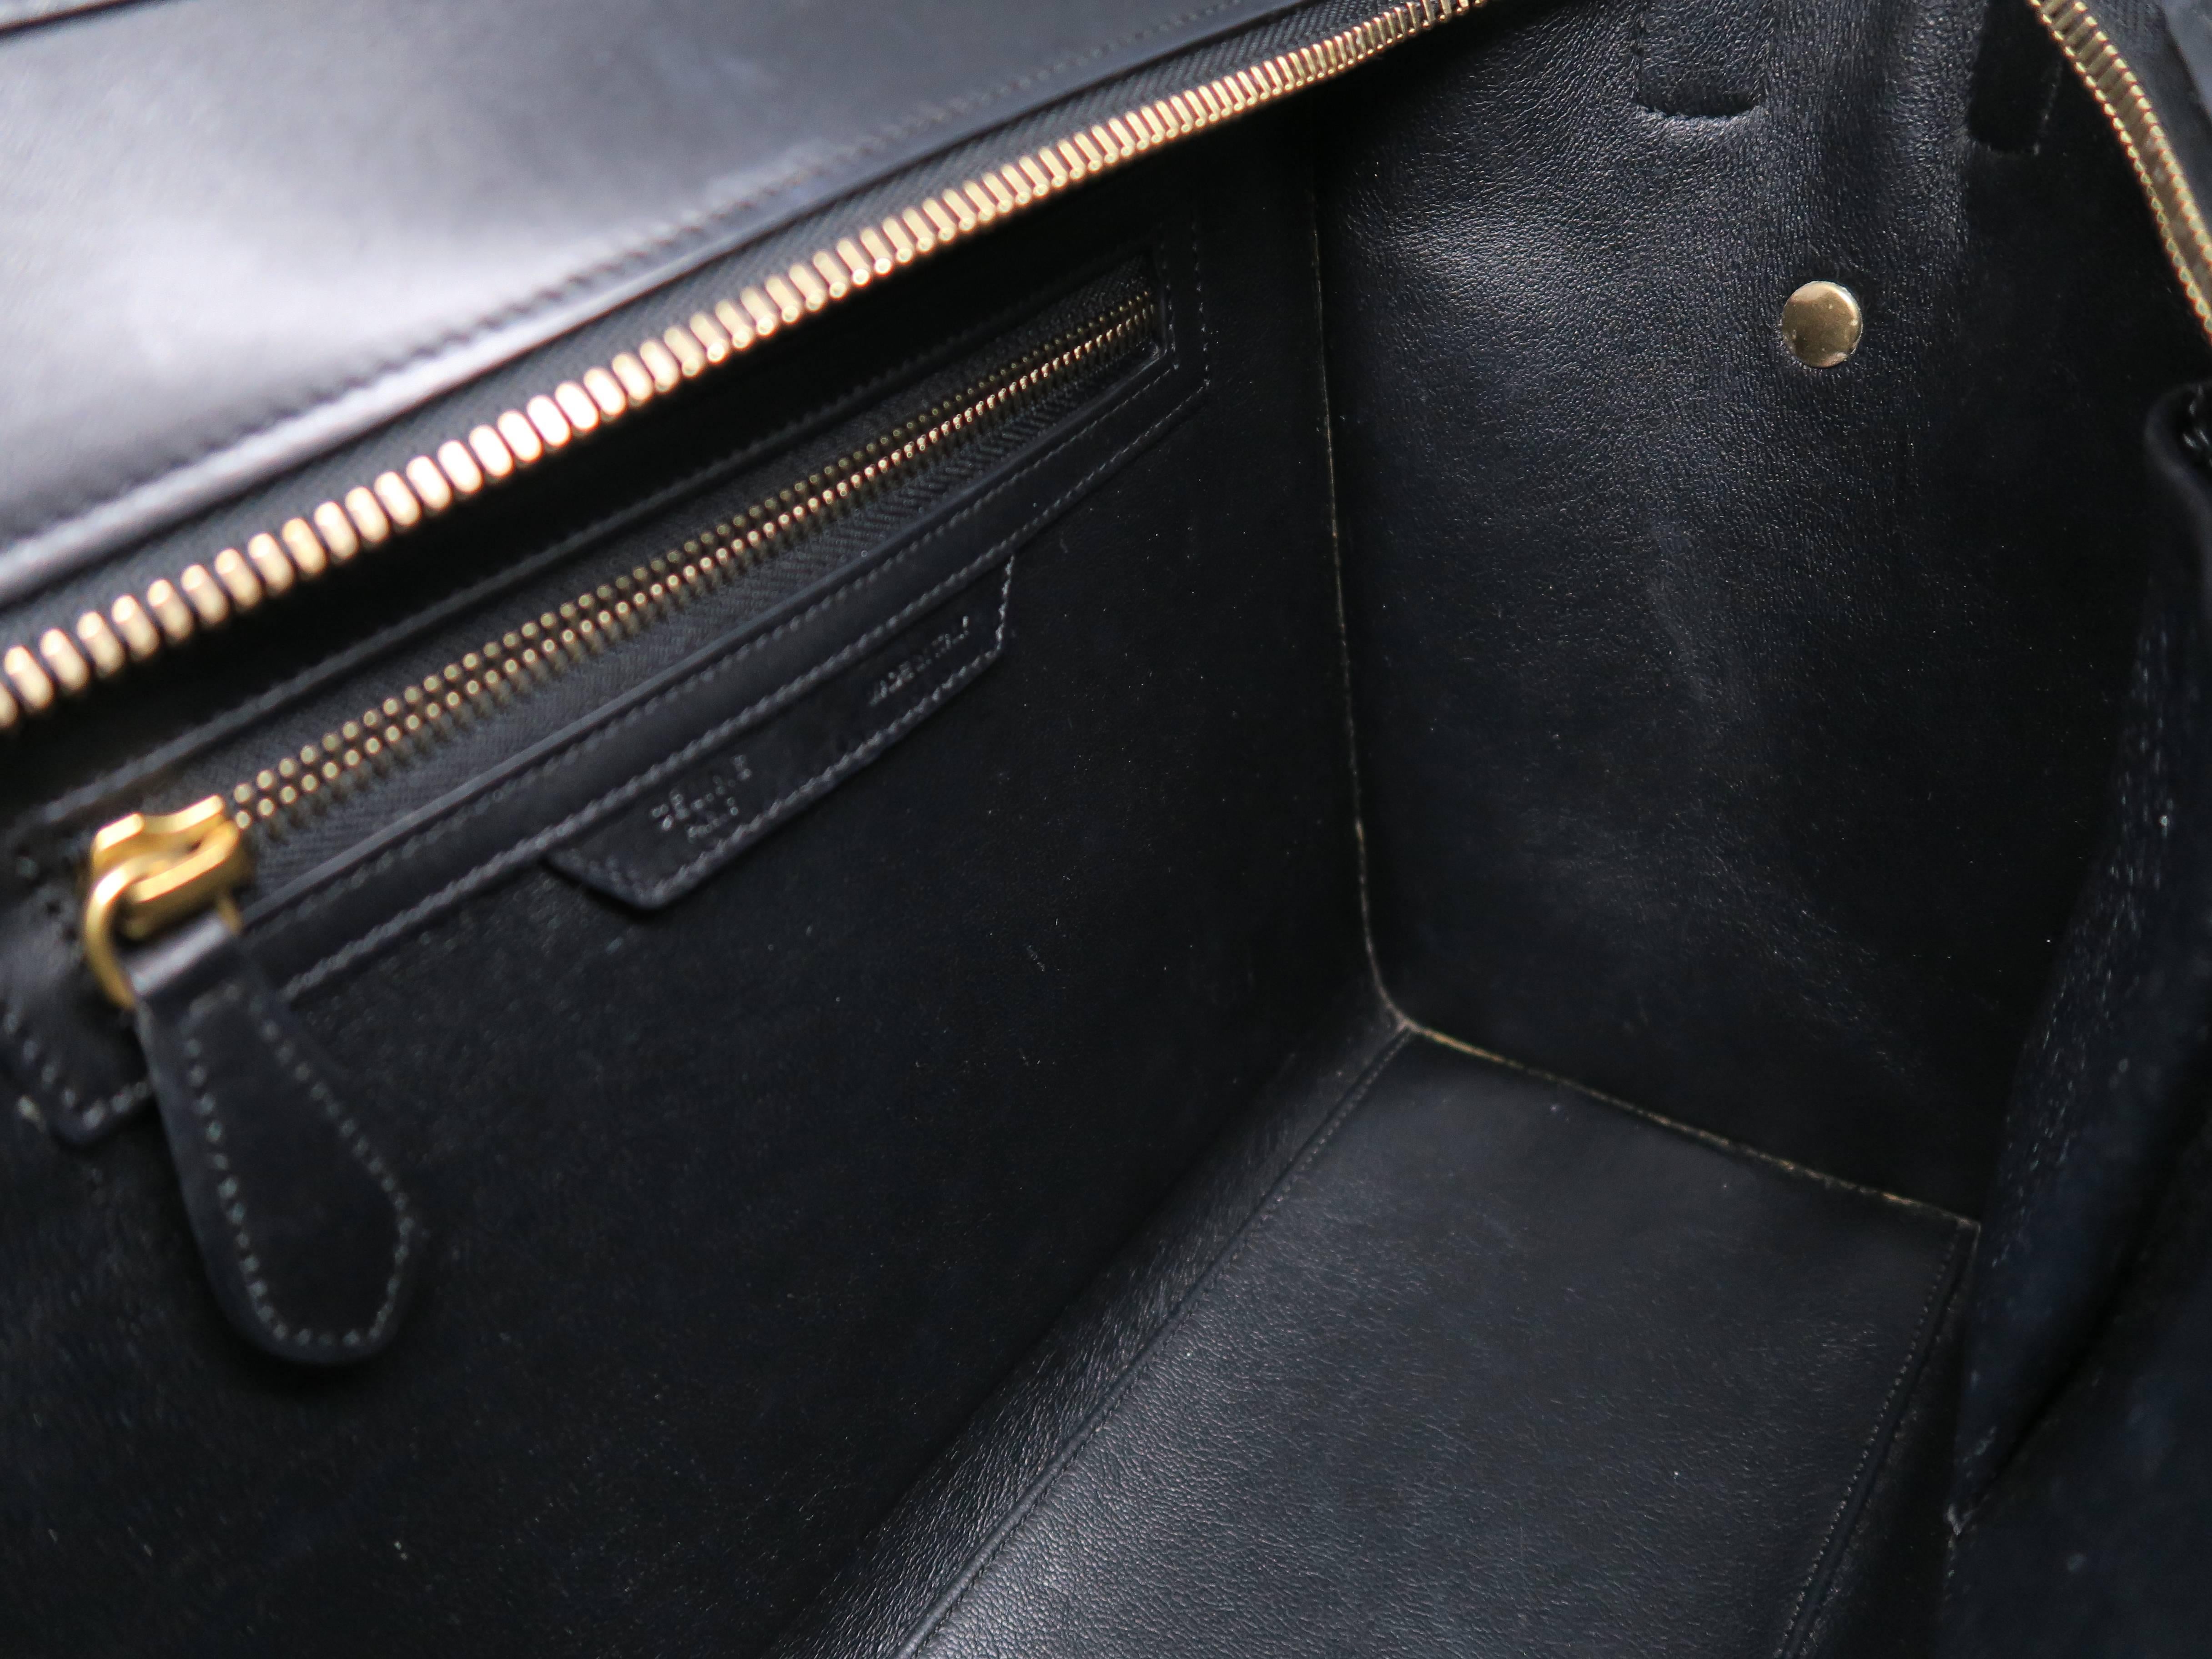 Celine Lugguage Black/ Beige Calfskin Leather Handbag For Sale 2